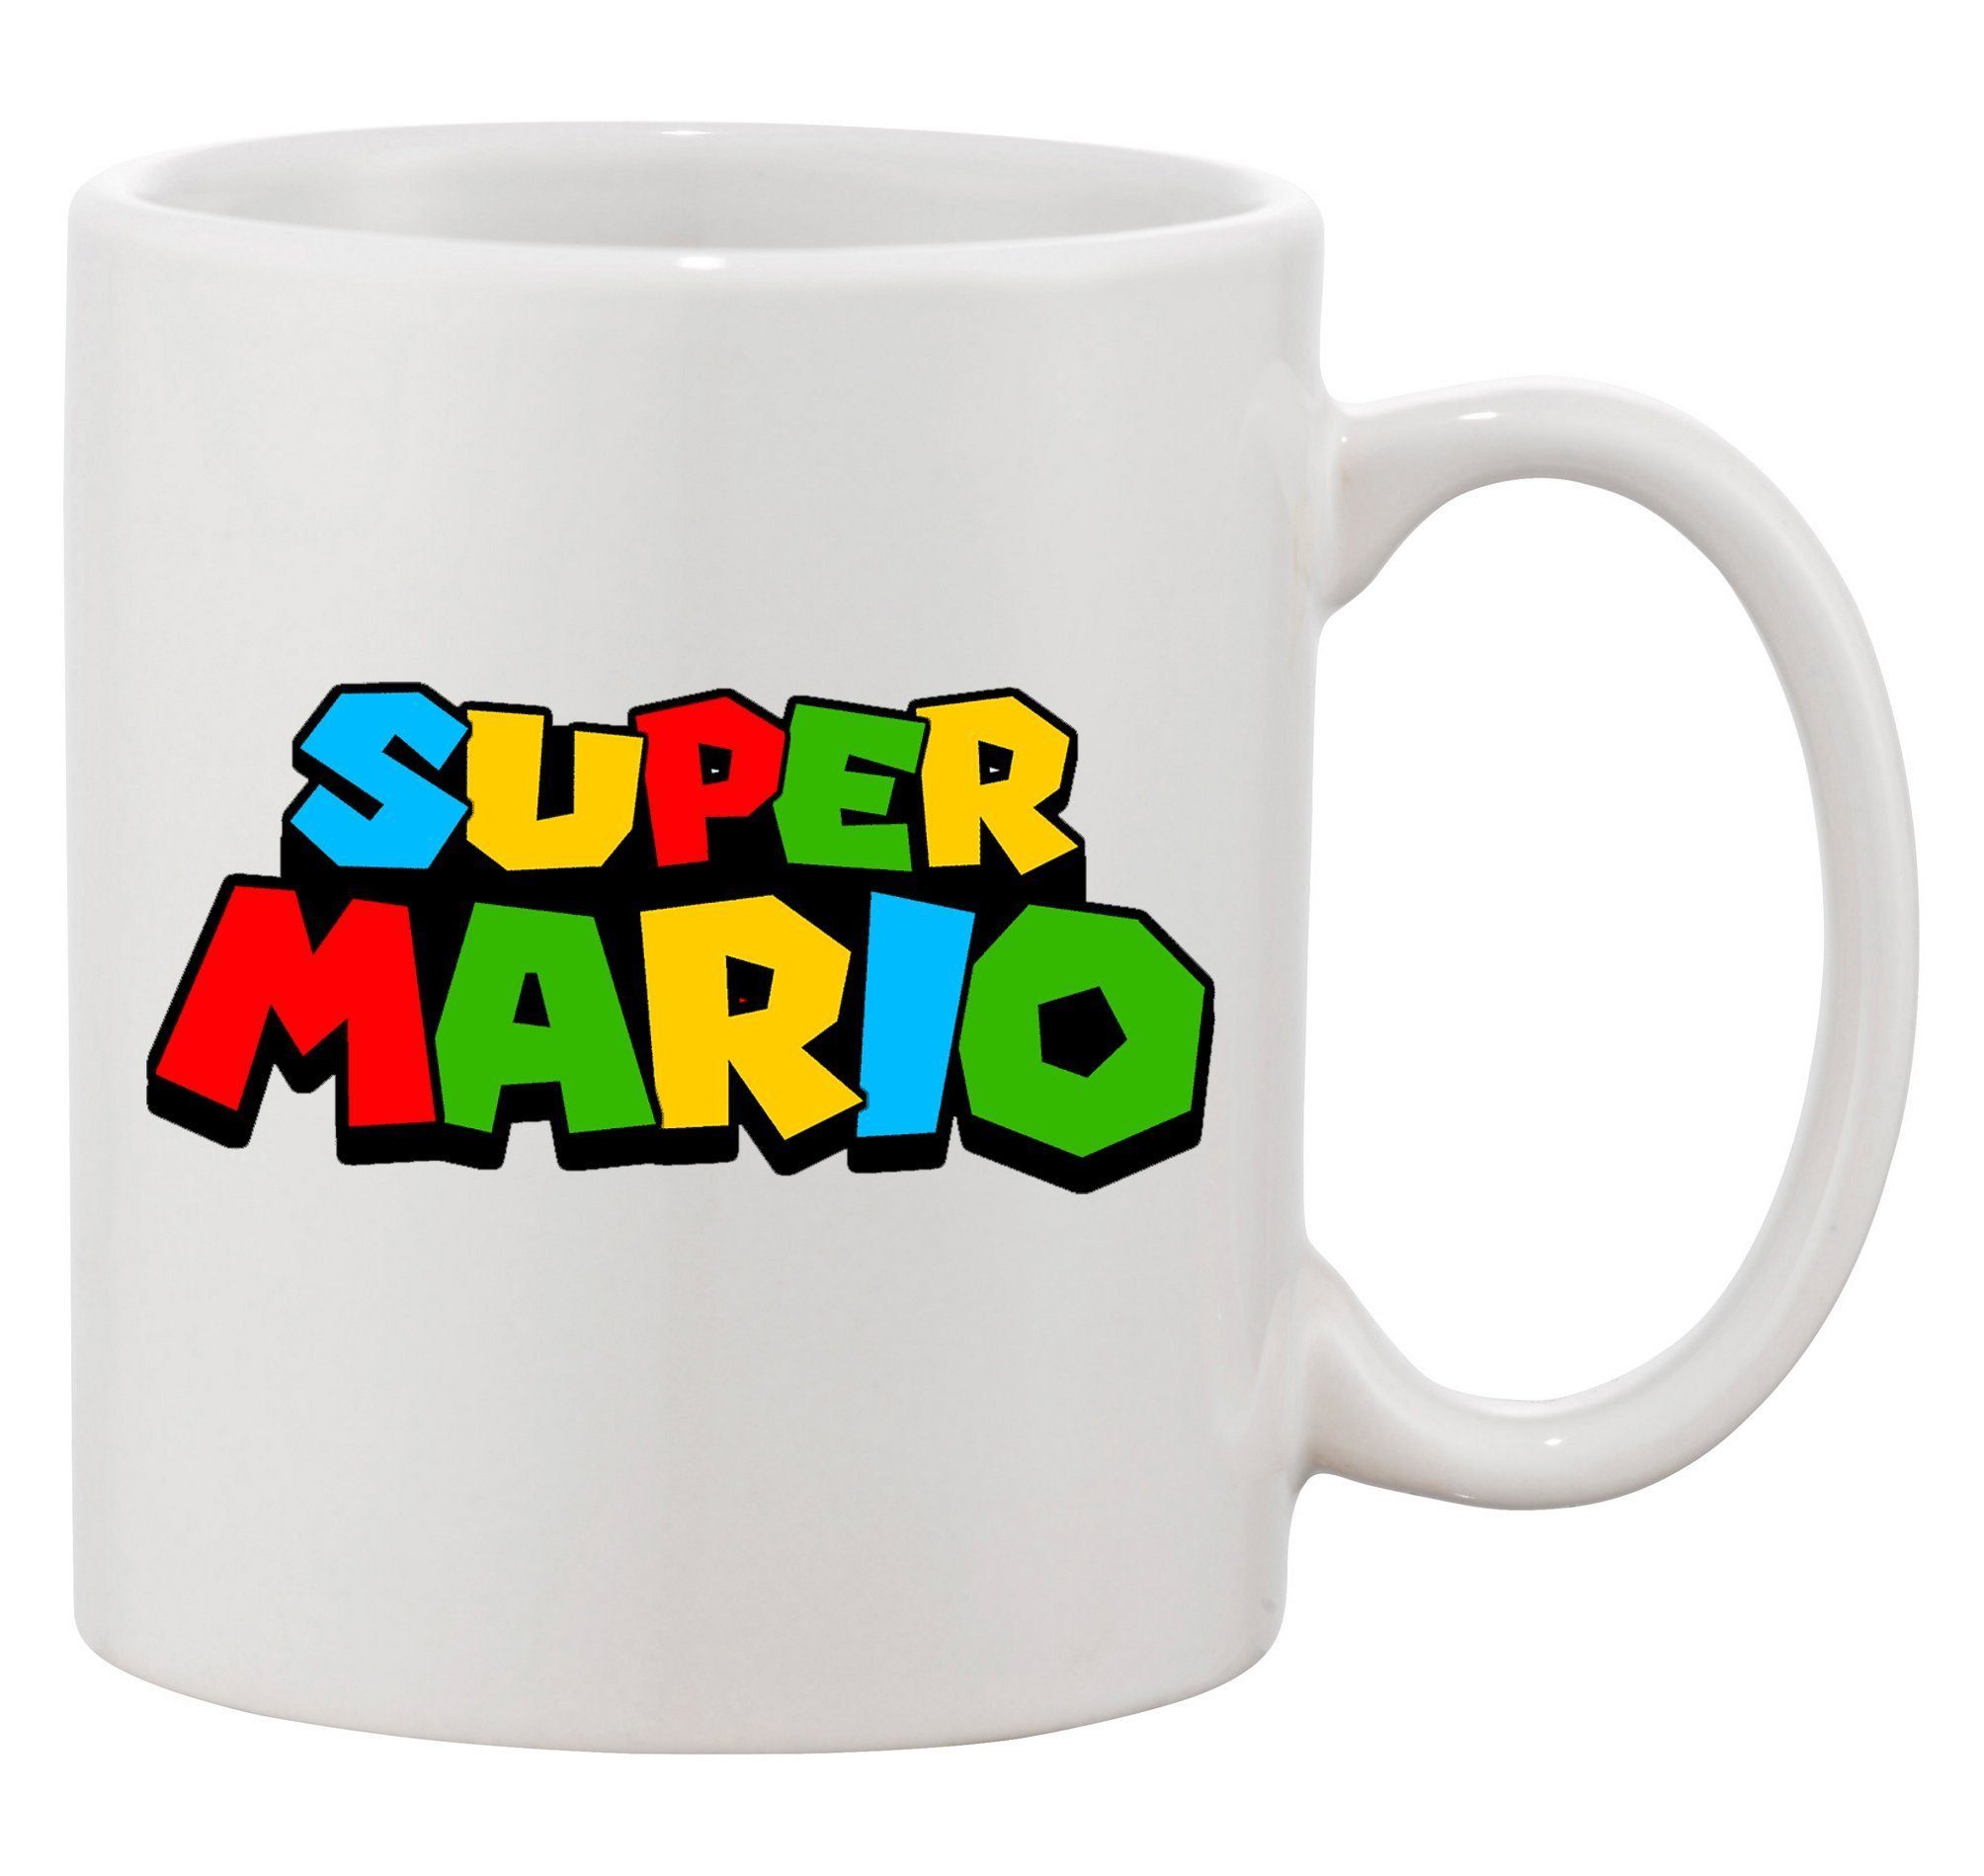 Weiss Tasse (600ml) Keramik Brownie Mario Konsole Blondie XXL Nintendo Yoshi Super & Luigi, Spiele